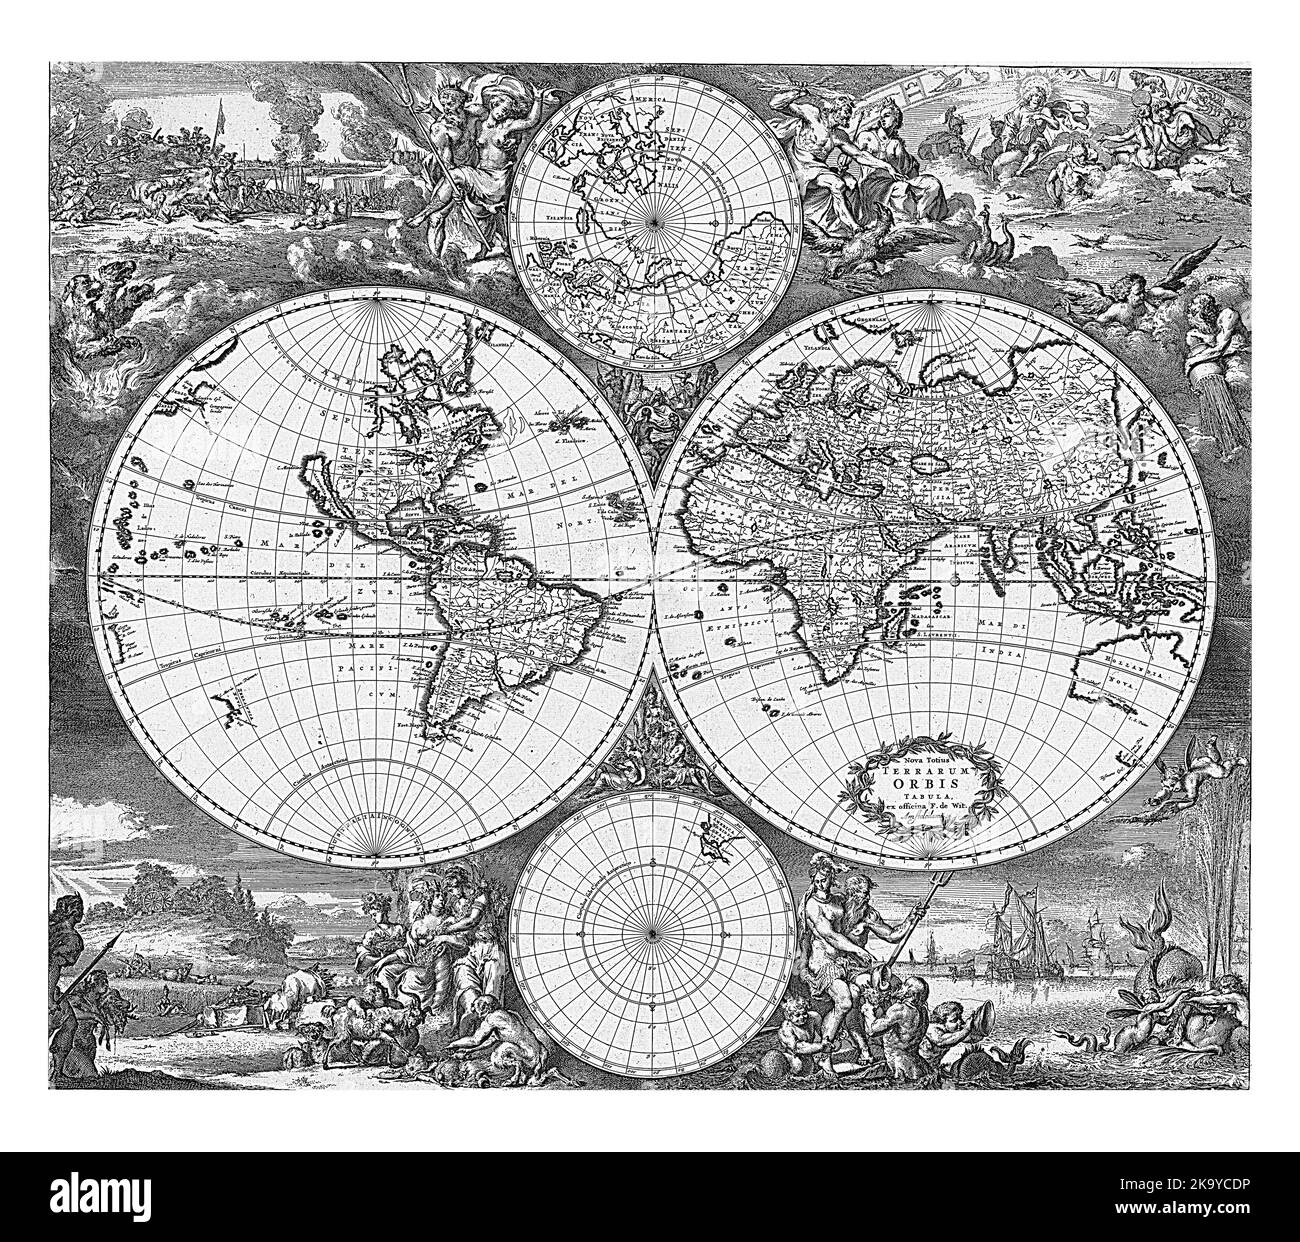 Mappa del mondo in due emisferi, con una mappa del polo nord in alto e del polo sud in basso. Negli angoli allegorie dei quattro elementi. Foto Stock